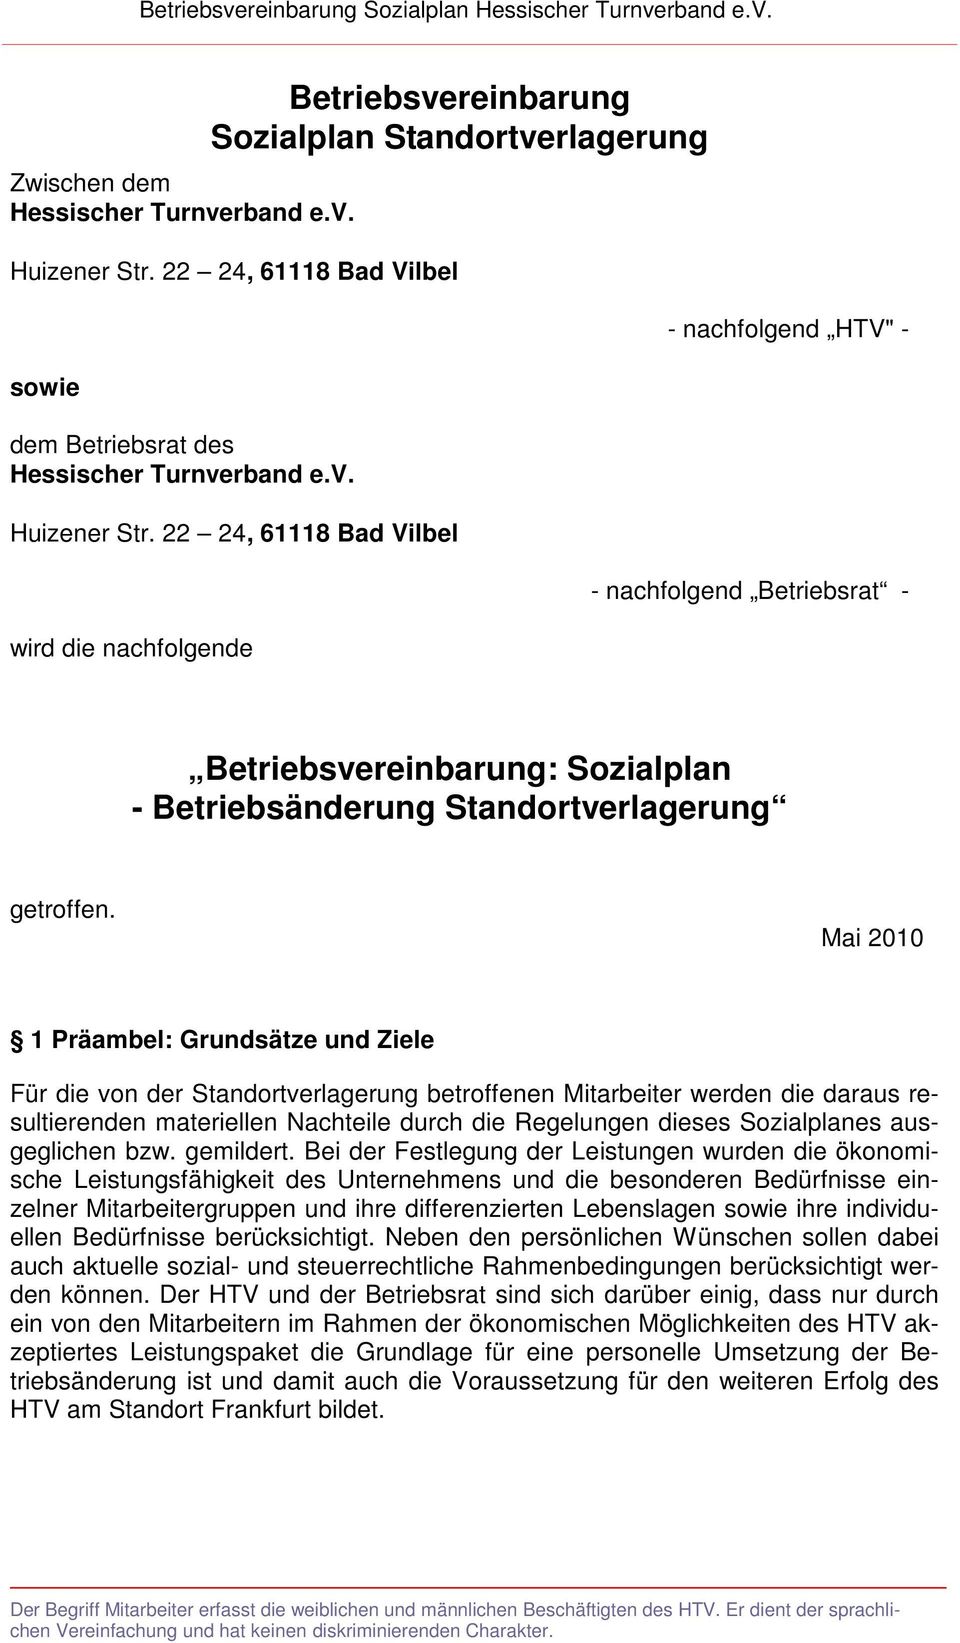 22 24, 61118 Bad Vilbel wird die nachfolgende - nachfolgend HTV" - - nachfolgend Betriebsrat - Betriebsvereinbarung: Sozialplan - Betriebsänderung Standortverlagerung getroffen.